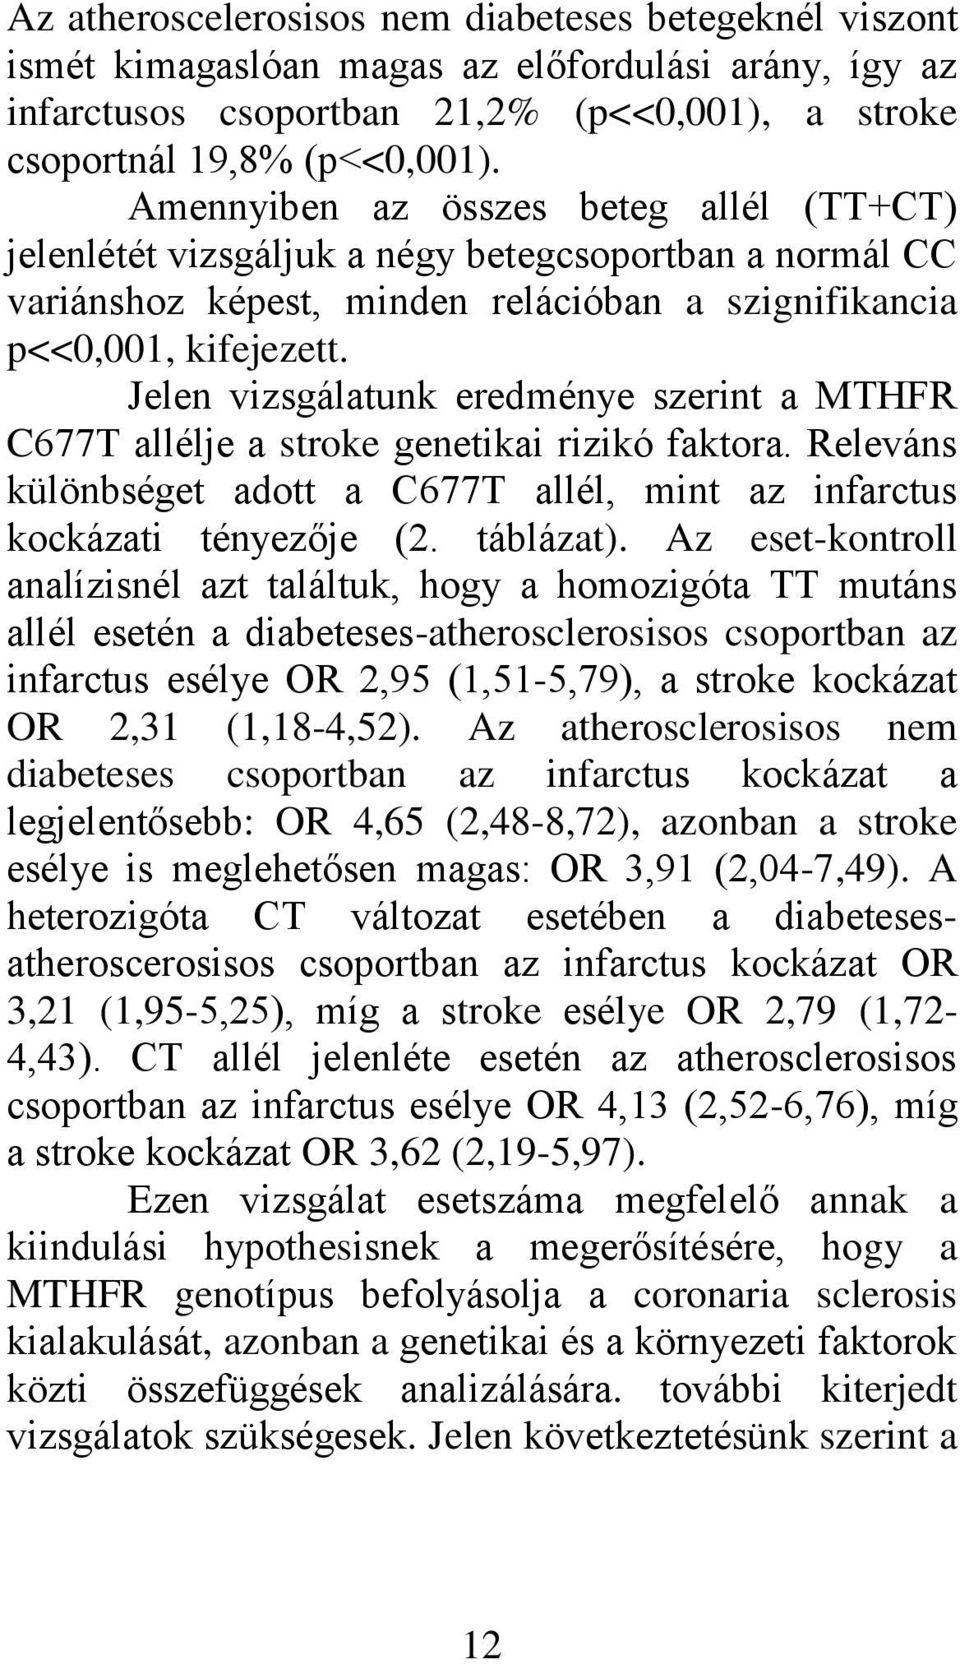 Jelen vizsgálatunk eredménye szerint a MTHFR C677T allélje a stroke genetikai rizikó faktora. Releváns különbséget adott a C677T allél, mint az infarctus kockázati tényezője (2. táblázat).